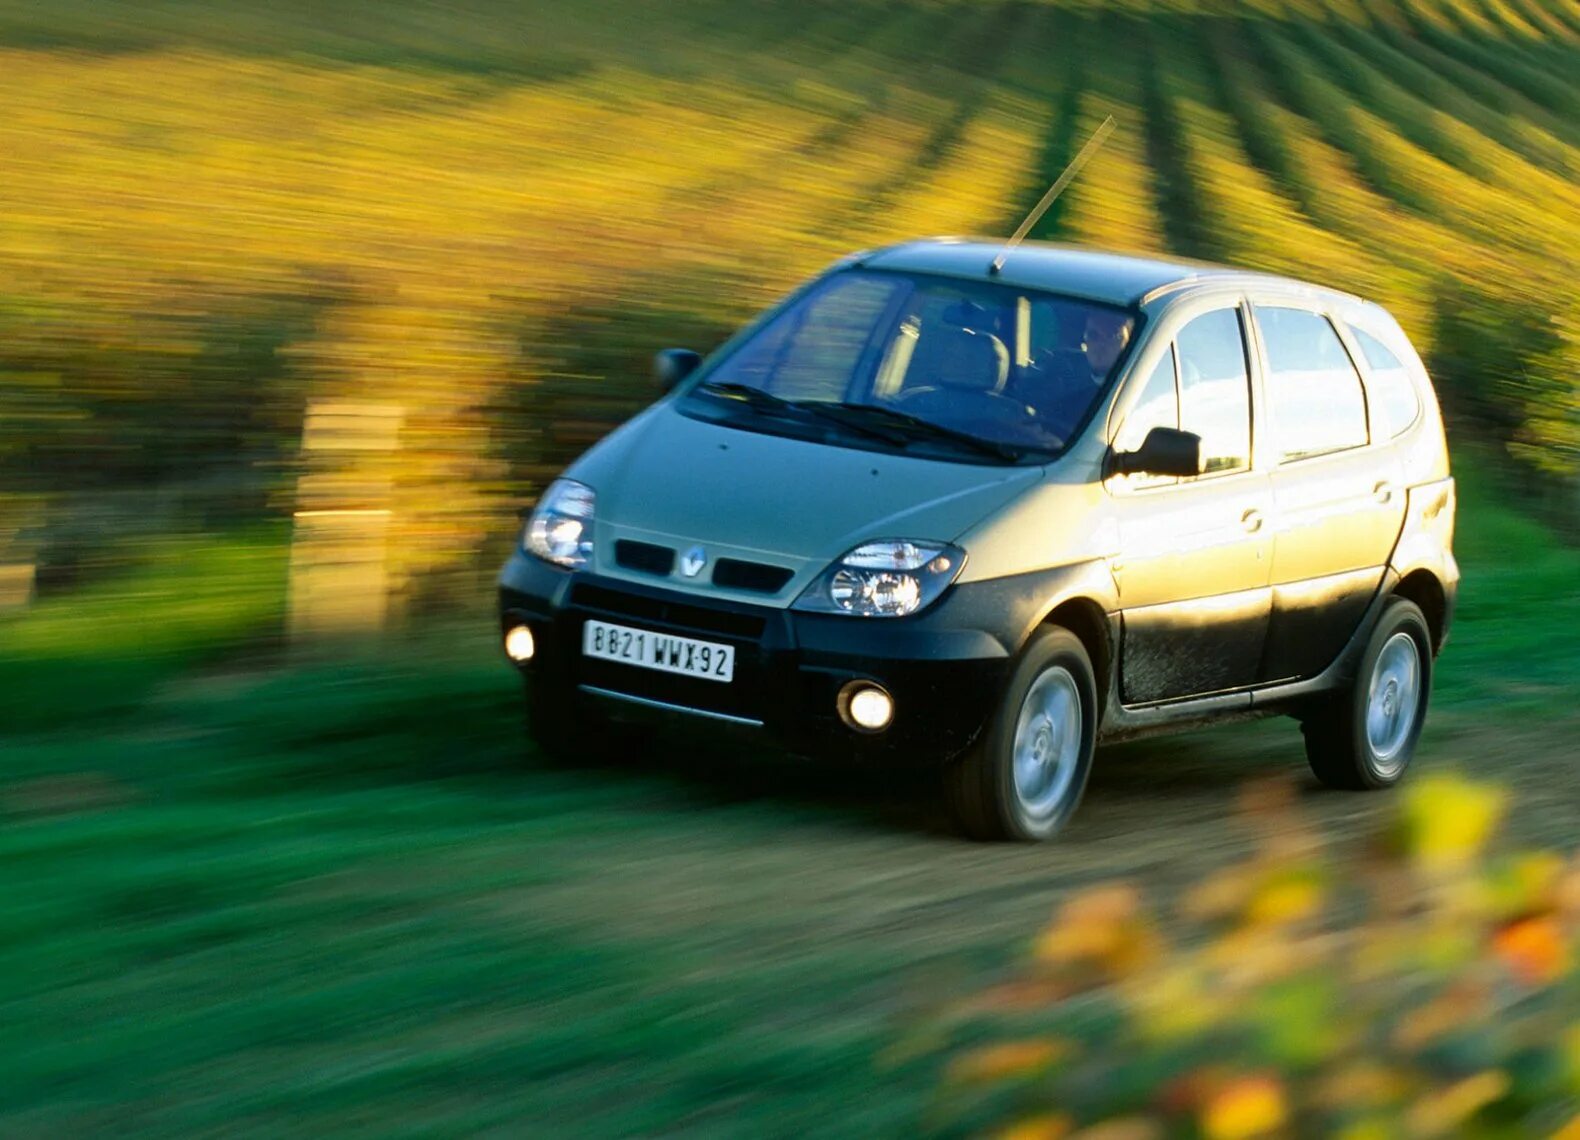 Renault rx4. Renault Scenic rx4 2000. Scenic rx4 2003. Renault Scenic 1999-2003. Scenic 1 rx4.